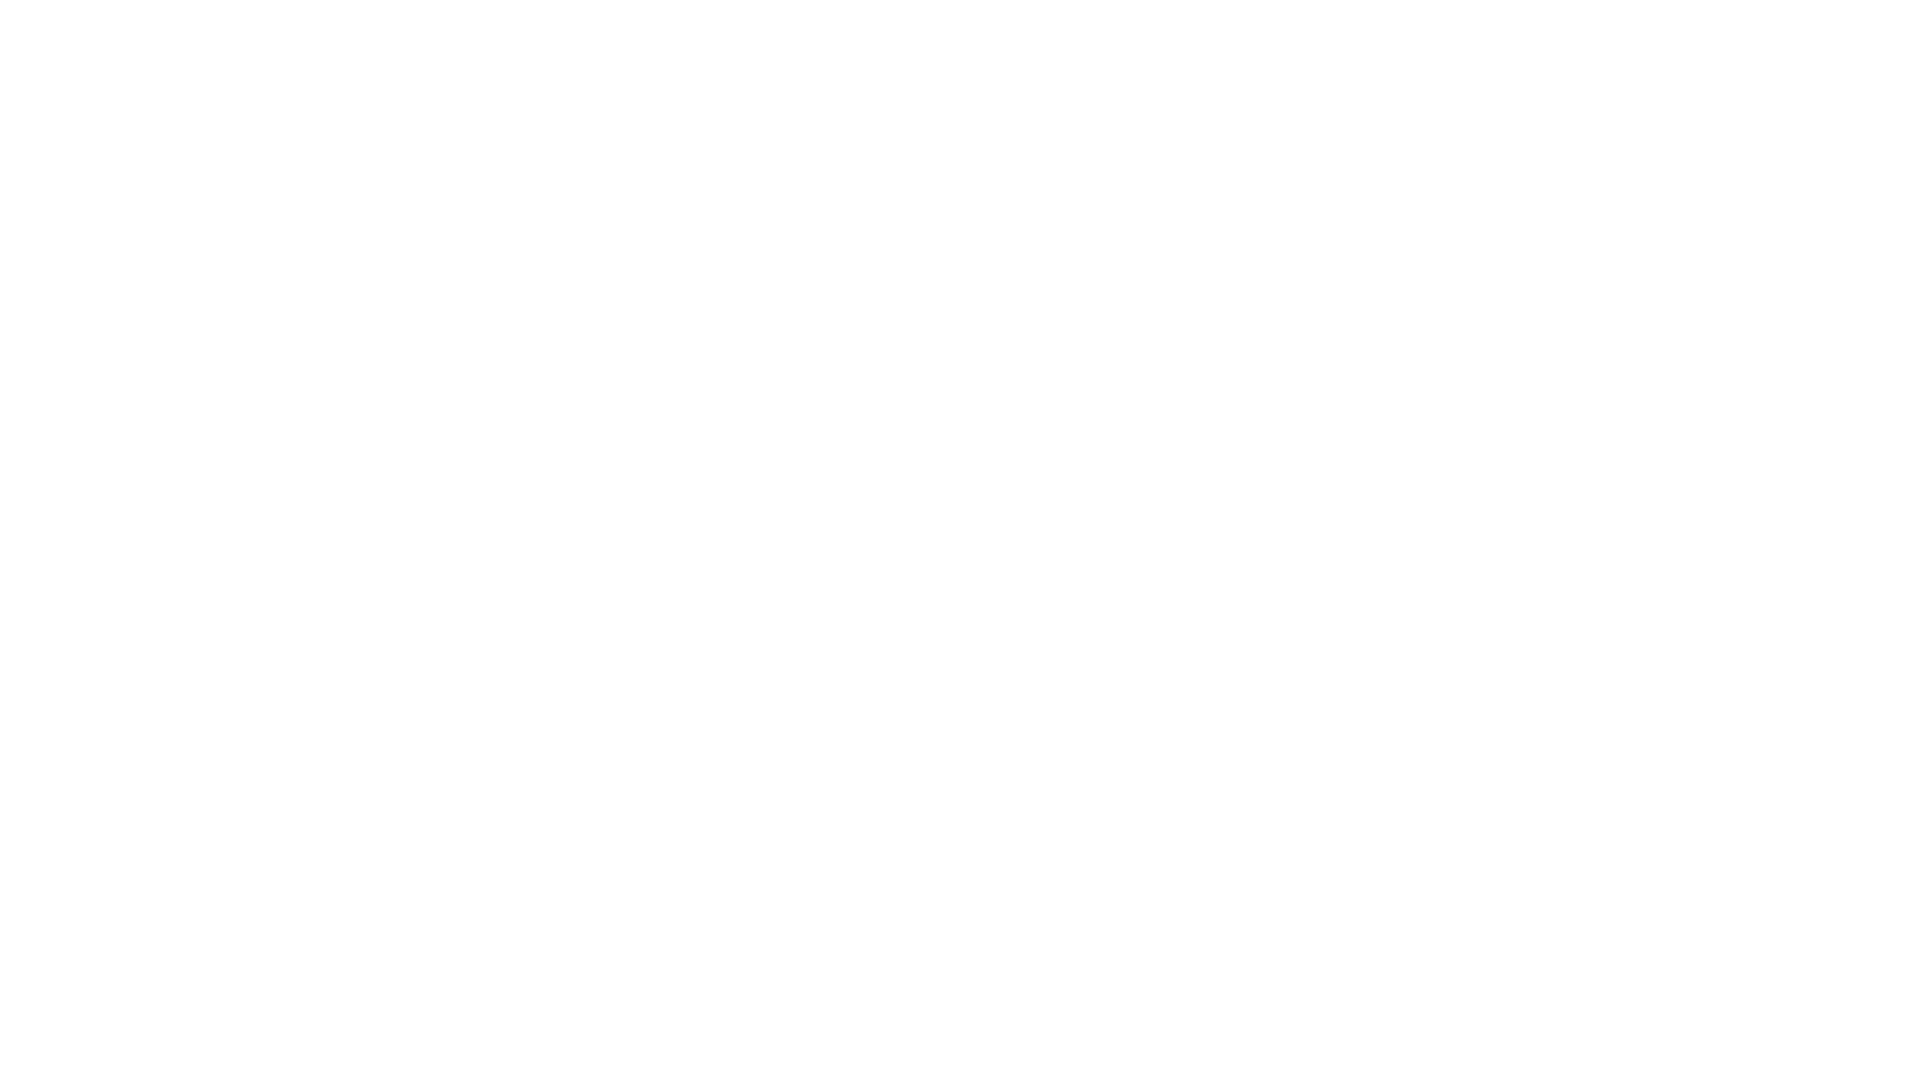 Les Soeurs Fideles Napa Valley